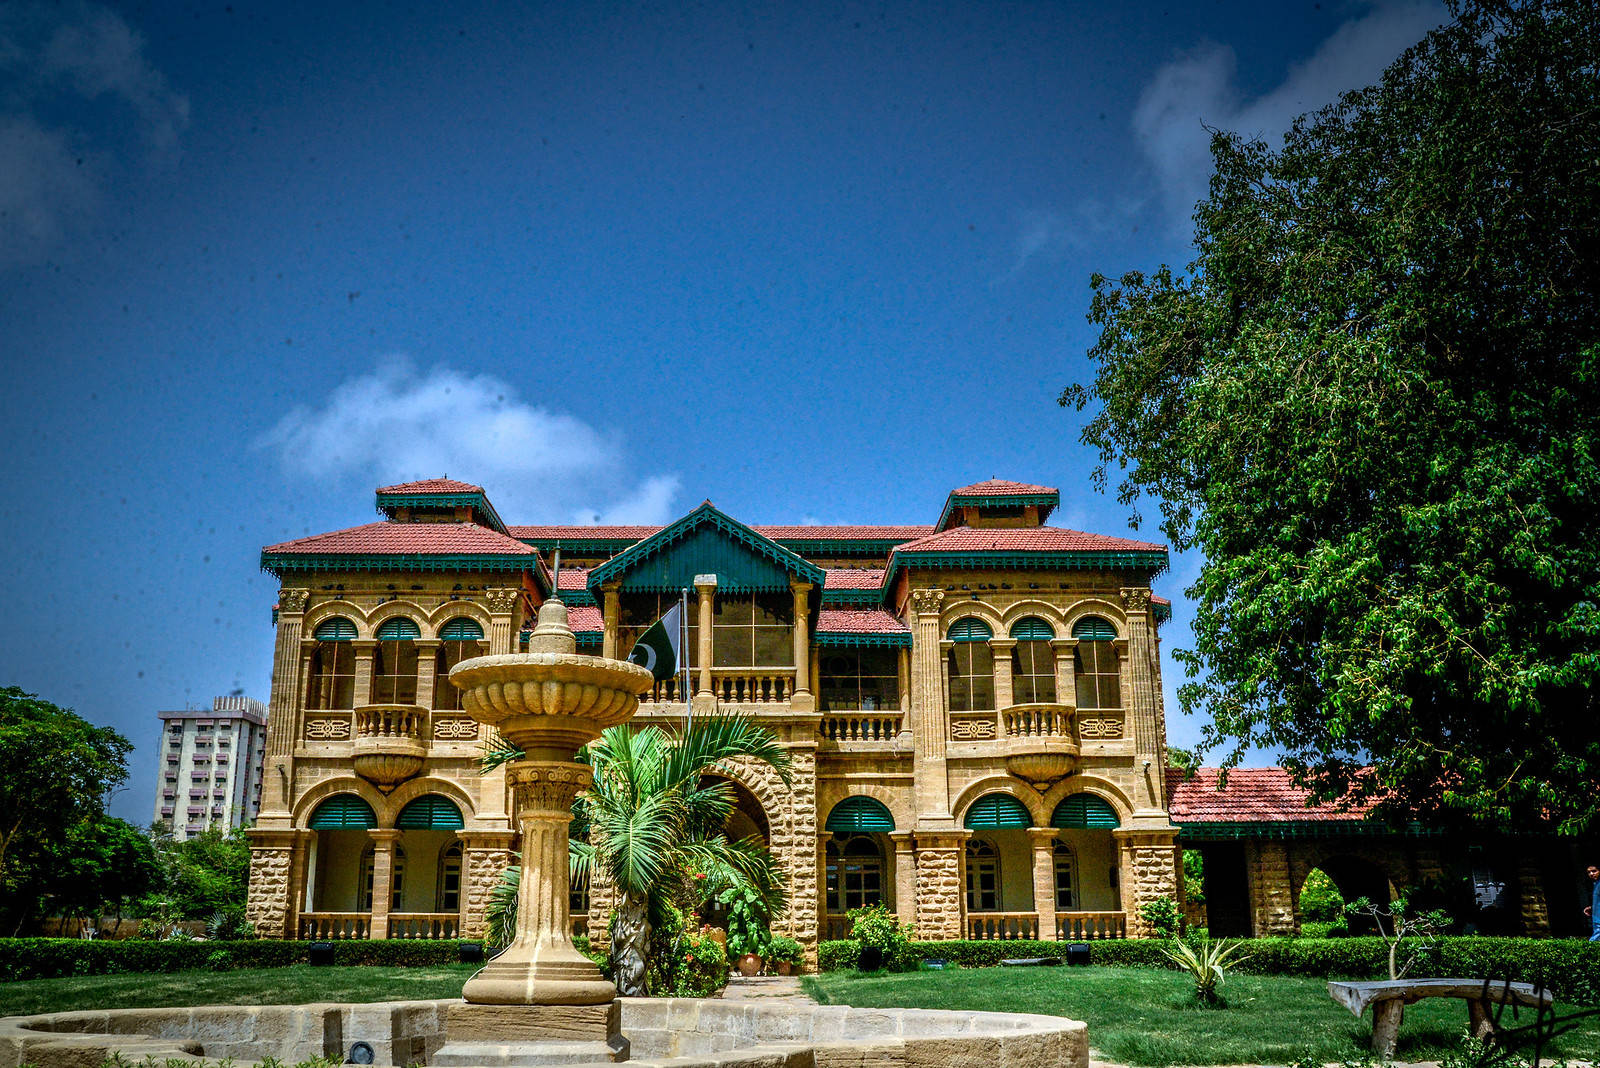 Karachiquaid-e-azam House Museum: Karachi Quaid-e-azam House Museum. Wallpaper